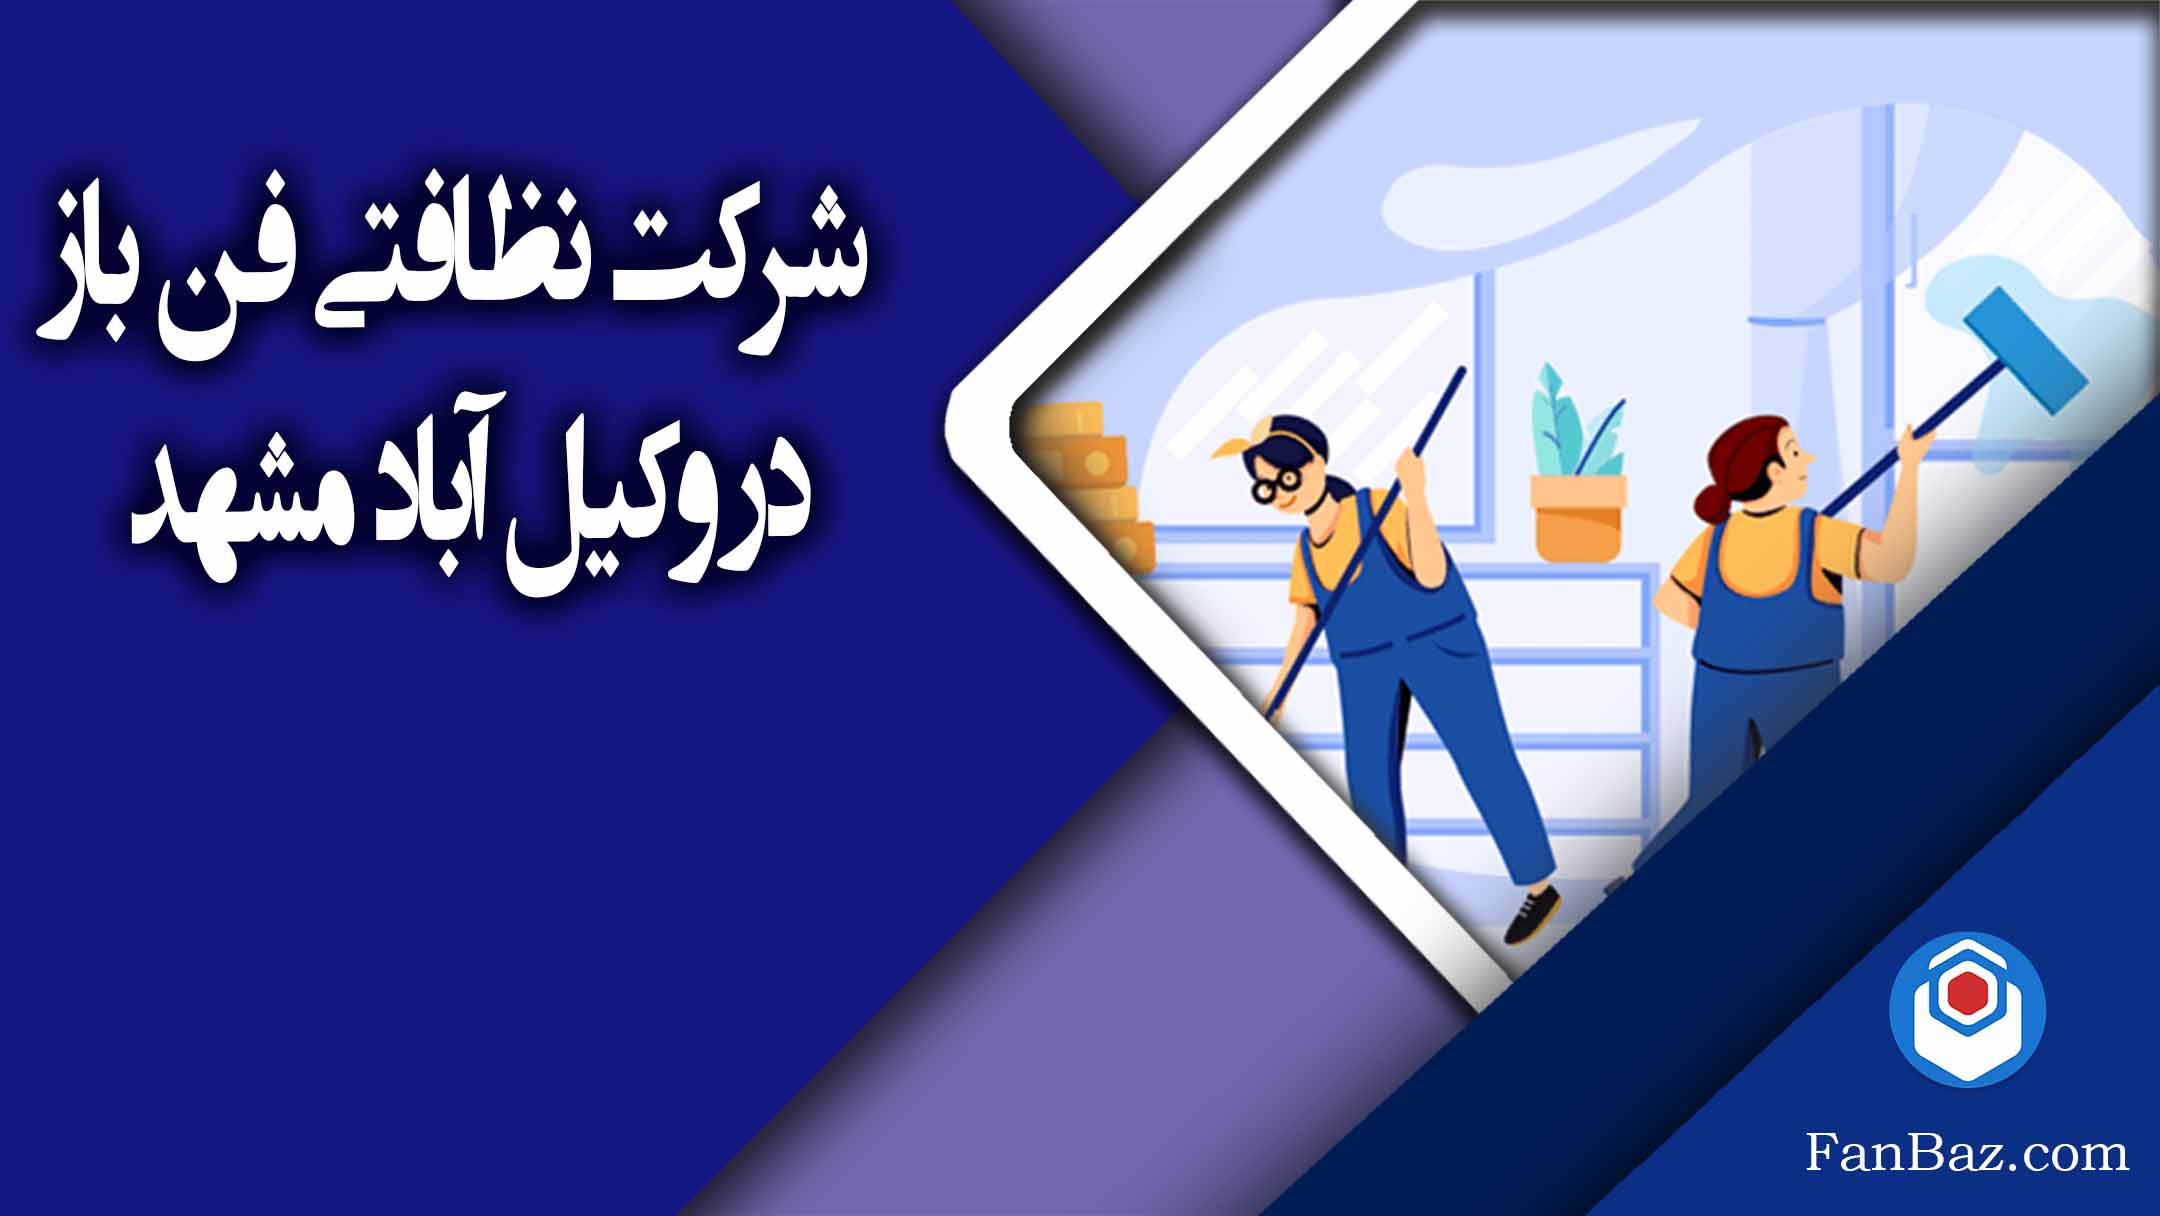 شرکت نظافتی فن باز در وکیل آباد مشهد